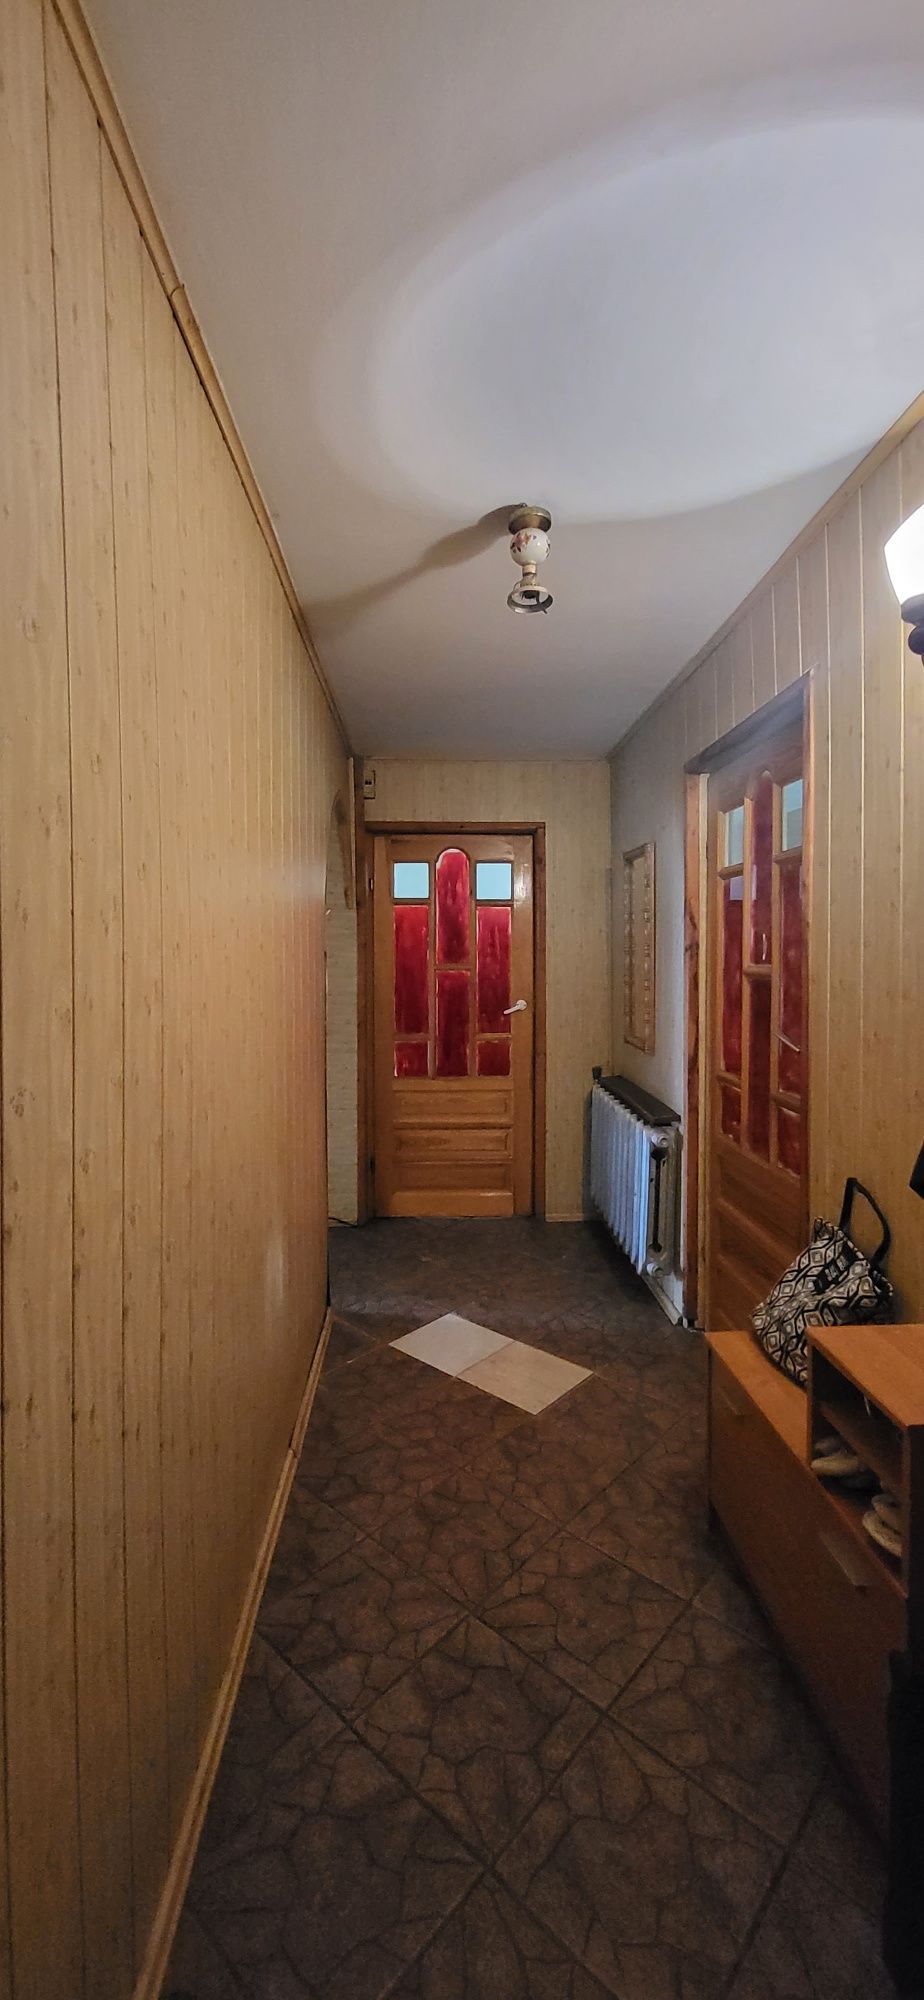 Dom jednorodzinny do remontu w gminie Widawa